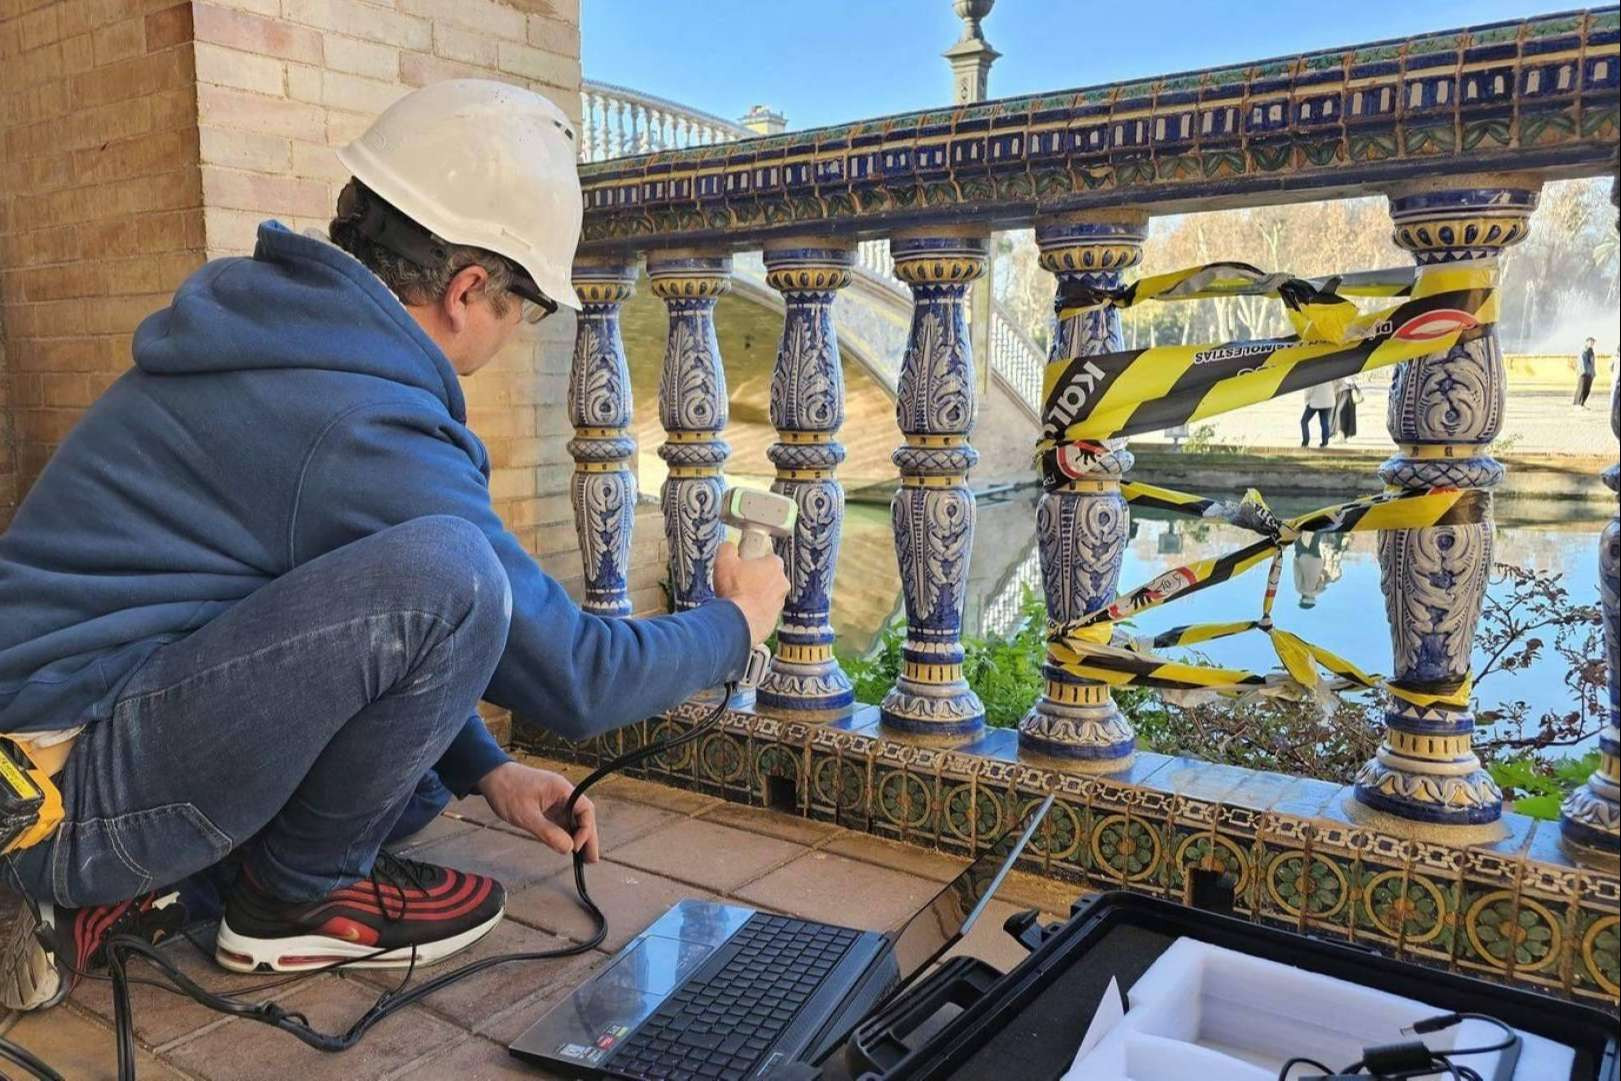  Sumiserán S.L fabrica piezas para la restauración del patrimonio en la plaza de España de Sevilla 